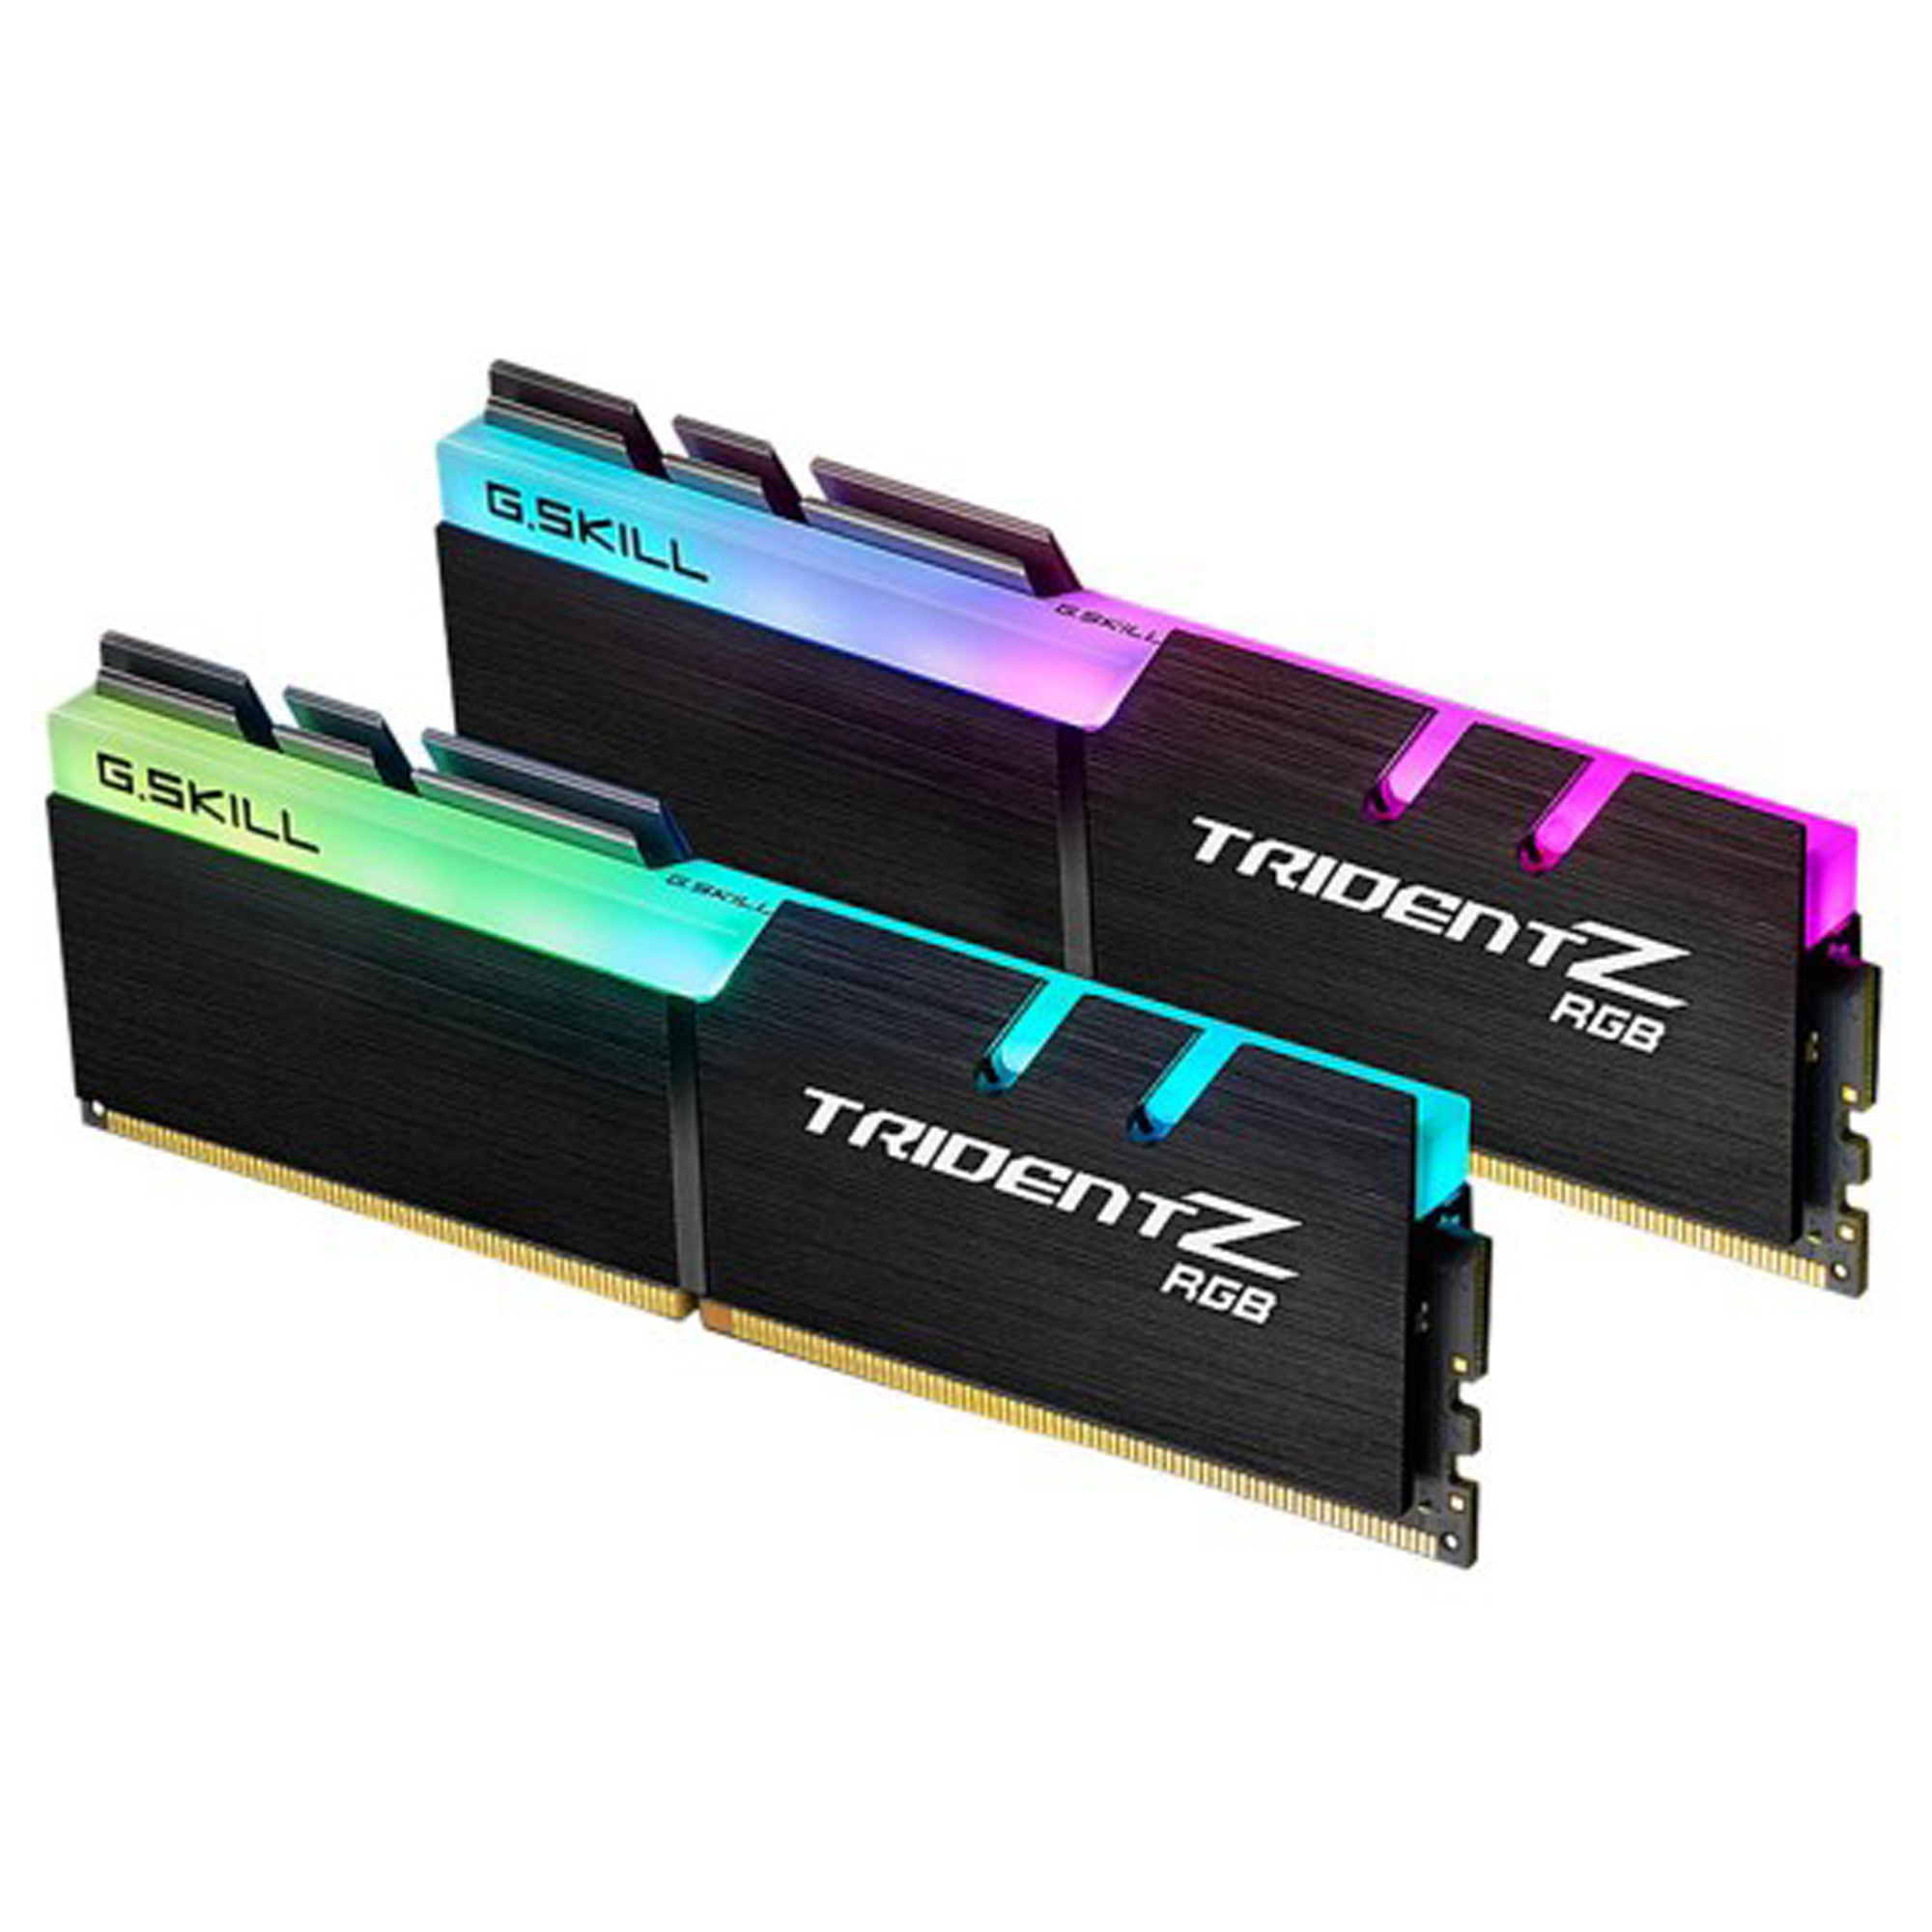 رم دسکتاپ DDR4 دو کاناله 2400 مگاهرتز CL15 جی اسکیل سری TRIDENT Z RGB ظرفیت 32 گیگابایت بسته دو عددی